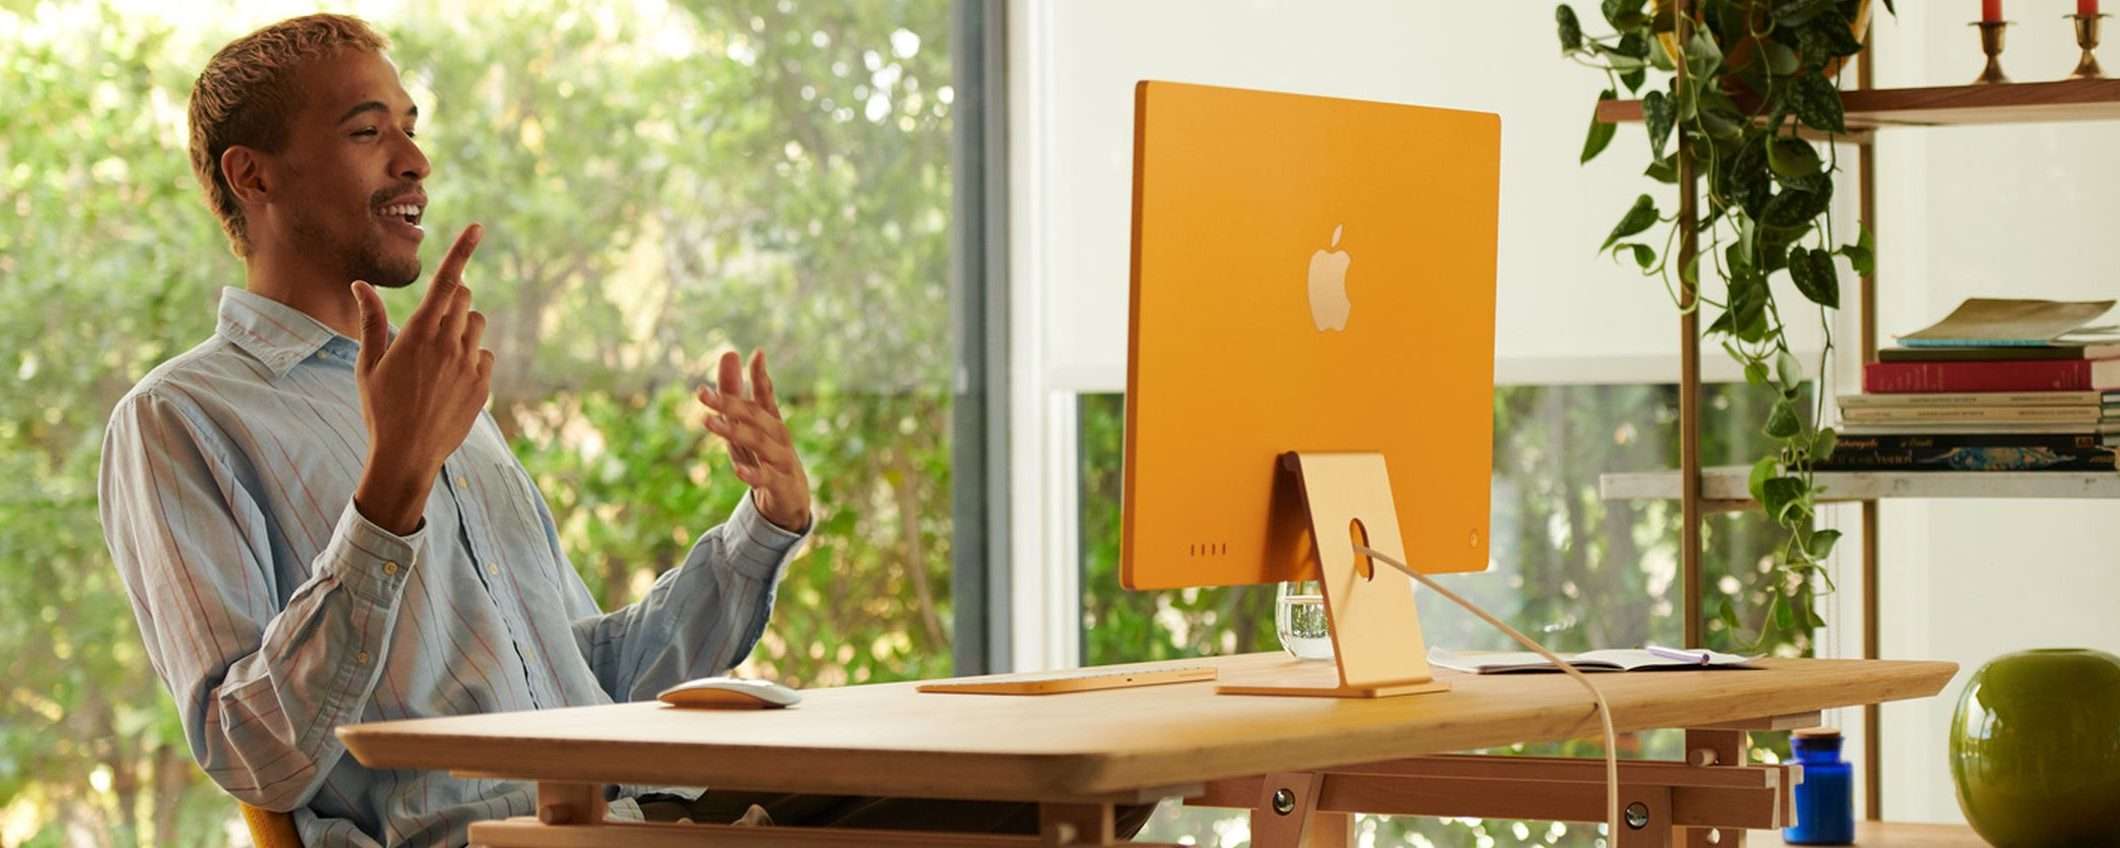 Nuovo Apple iMac da 24 pollici: annuncio imminente